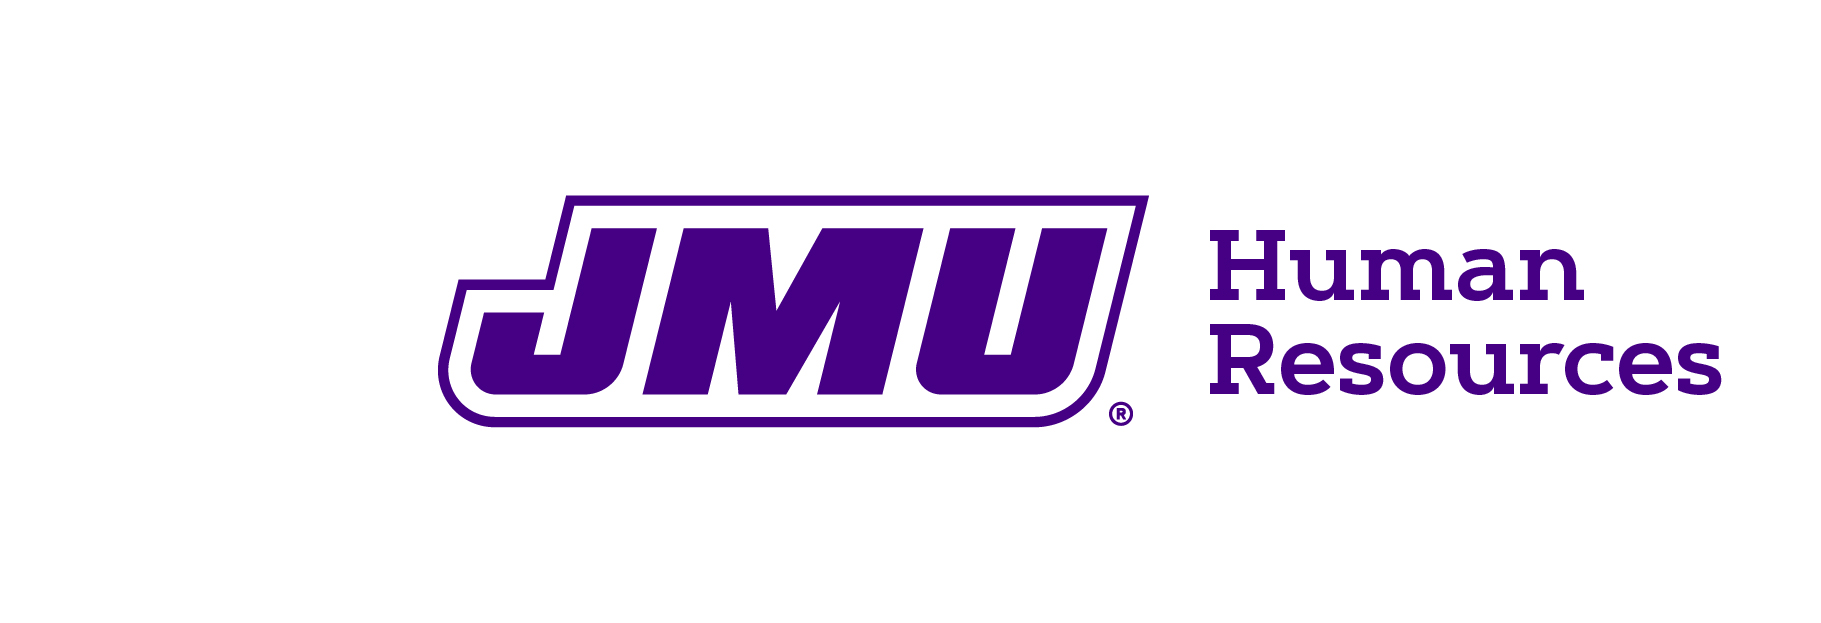 JMU-Human Resources-horiz-purple.jpg